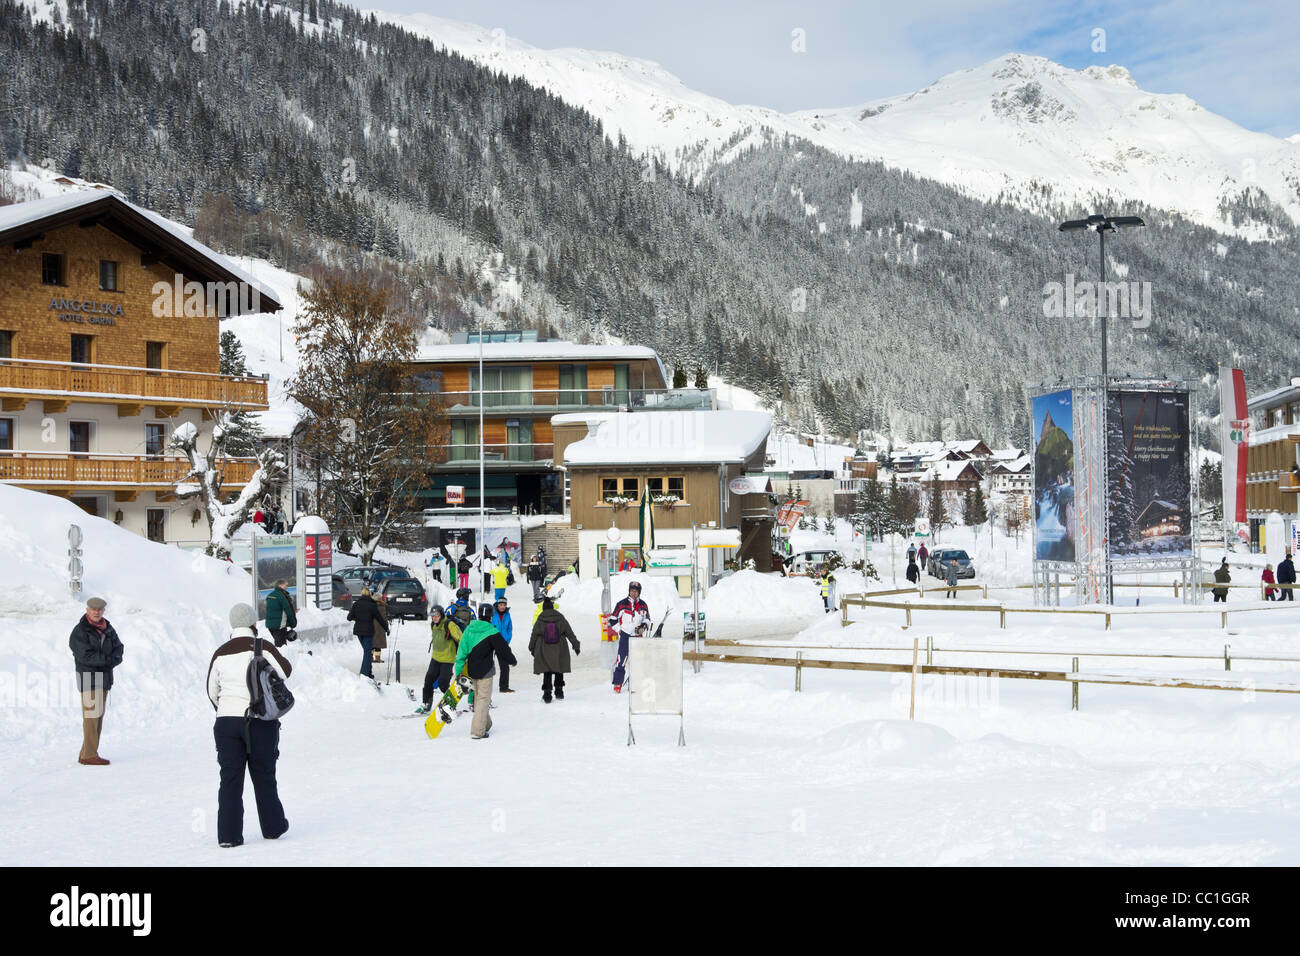 Scène de village avec des skieurs en ski alpin avec de la neige en hiver à St Anton am Arlberg, Tyrol, Autriche. Banque D'Images